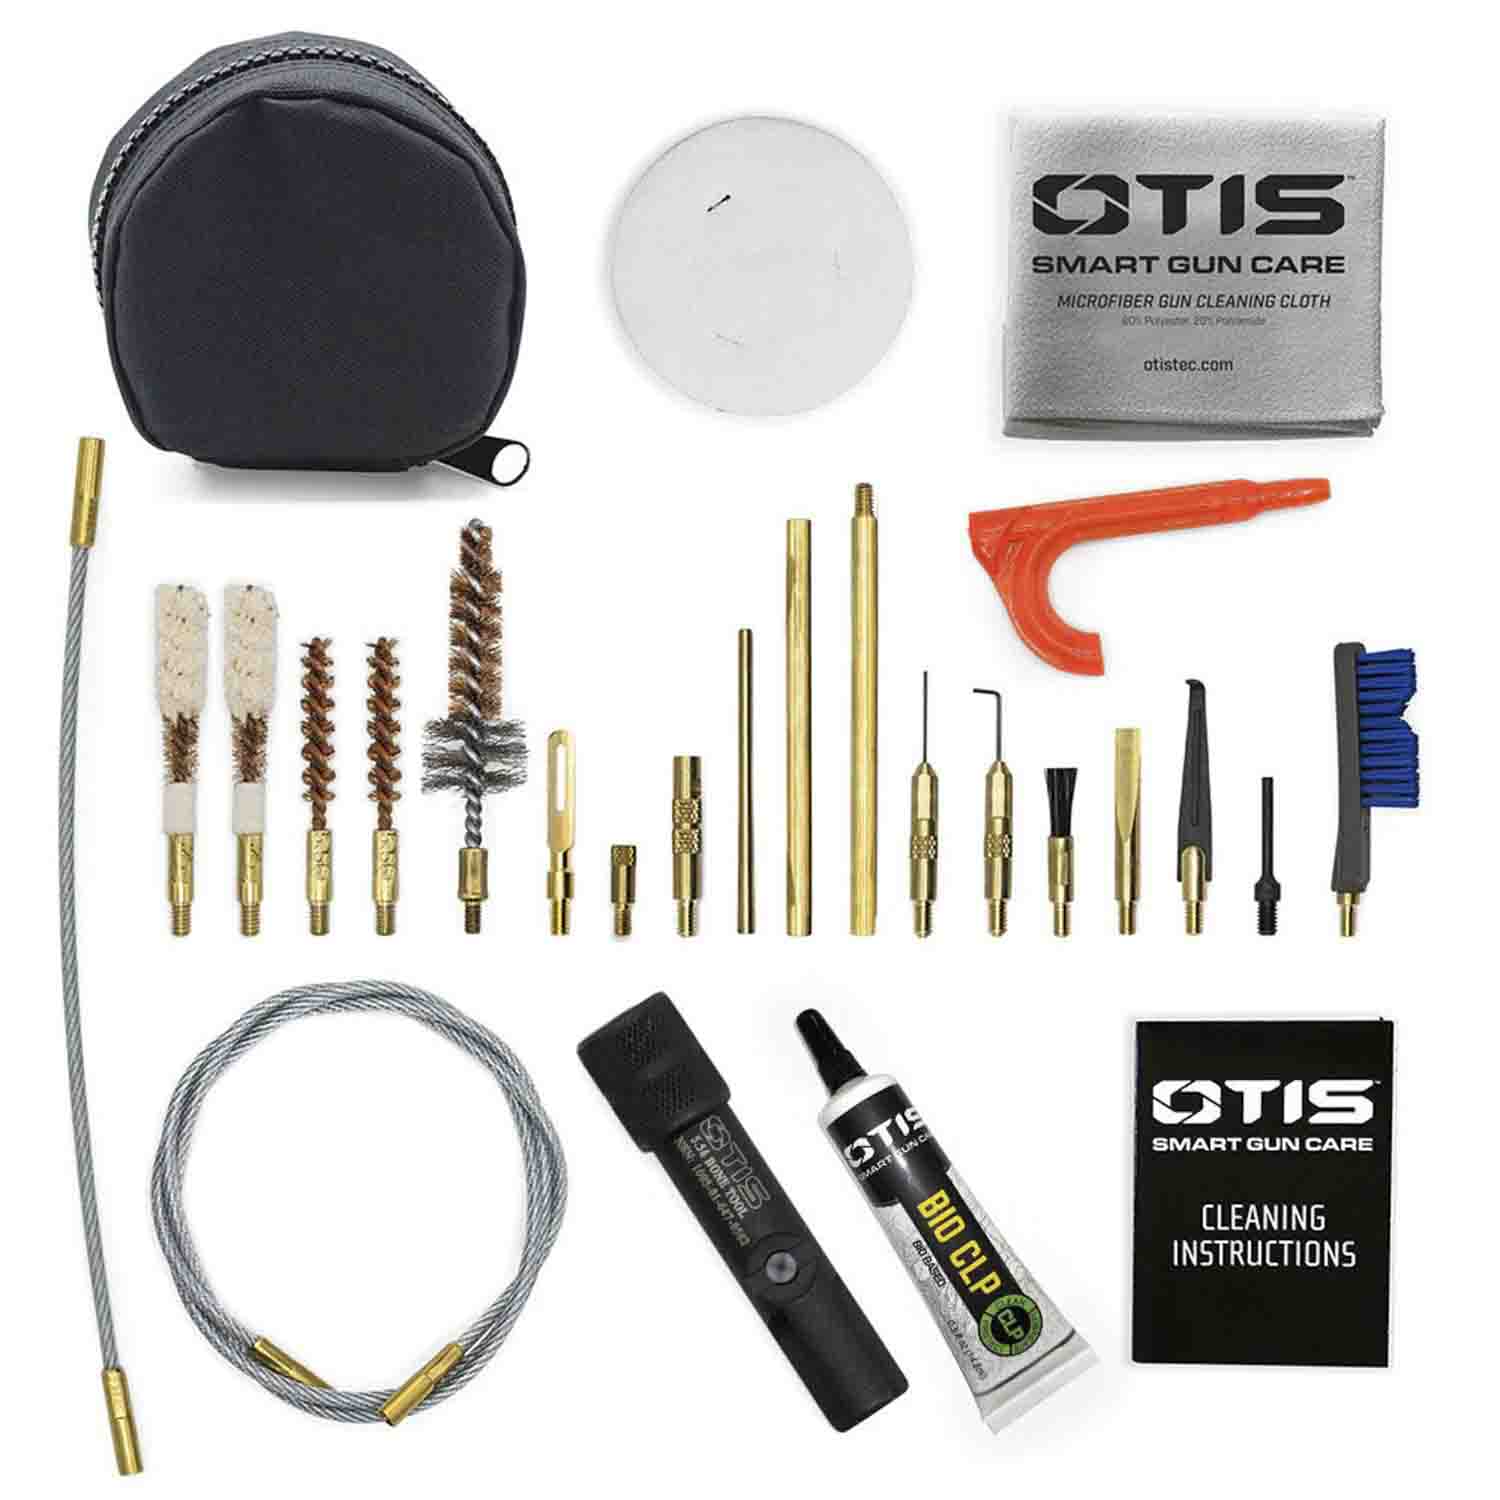 Otis MSR/ASR Cleaning Kit